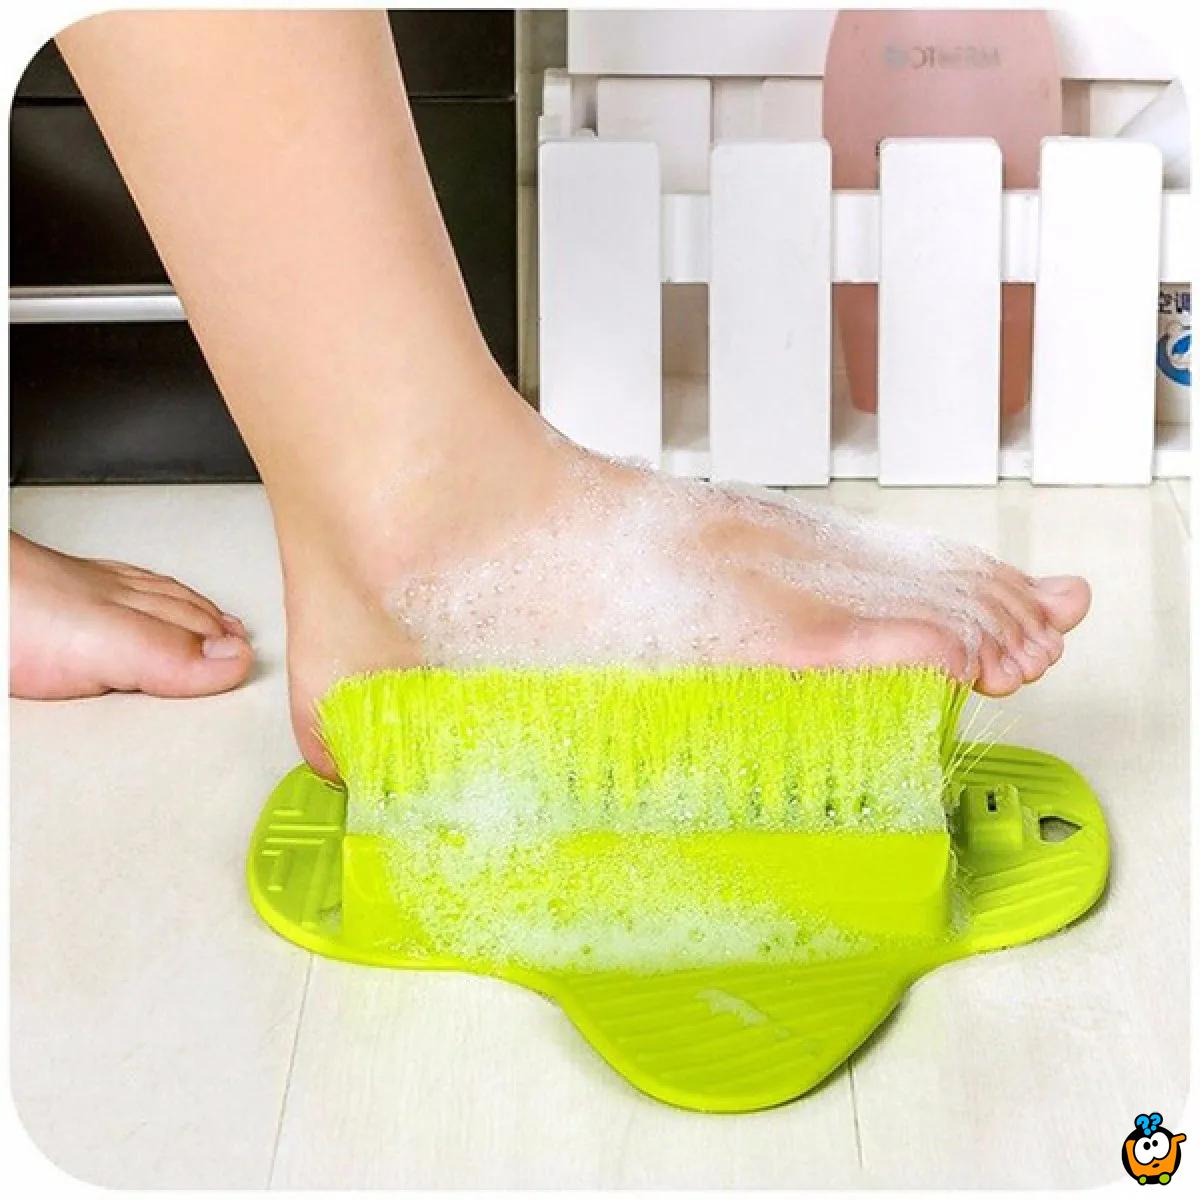 Foot brush - četka za pranje stopala